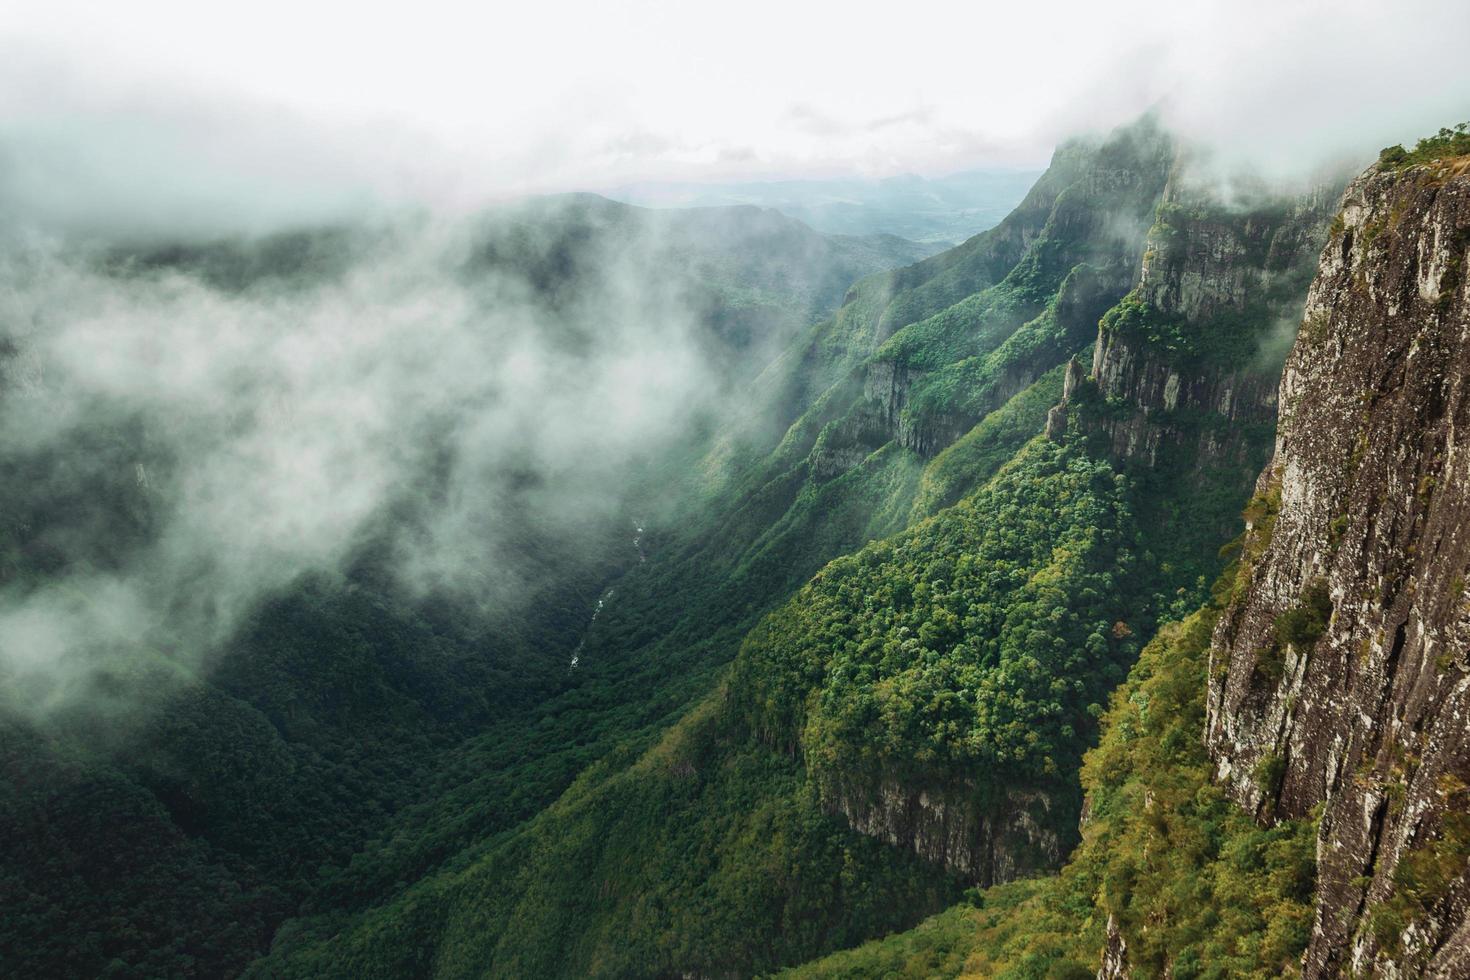 enorme cañón de fortaleza con escarpados acantilados rocosos cubiertos por un espeso bosque en un día nublado cerca de cambara do sul. una pequeña ciudad rural en el sur de Brasil con increíbles atractivos turísticos naturales. foto